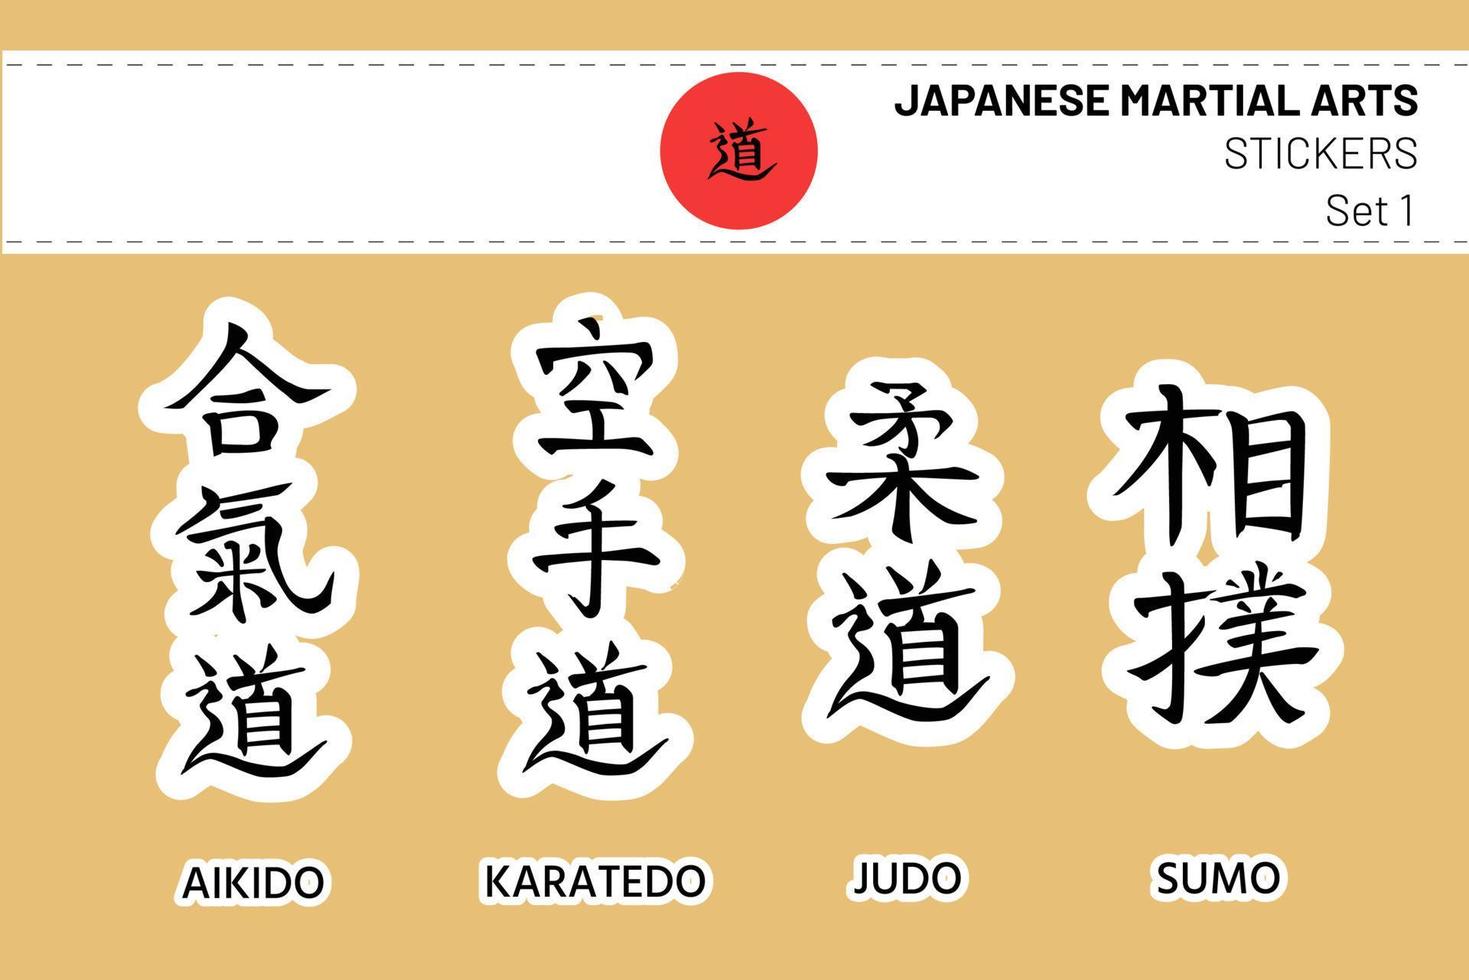 aikido, karate do, kyudo, sumô. conjunto de hieróglifos caligráficos editáveis ou kanji, nomes de artes marciais japonesas em forma de adesivos. faixa branca como tiara de hachimaki e bandeira do japão vetor